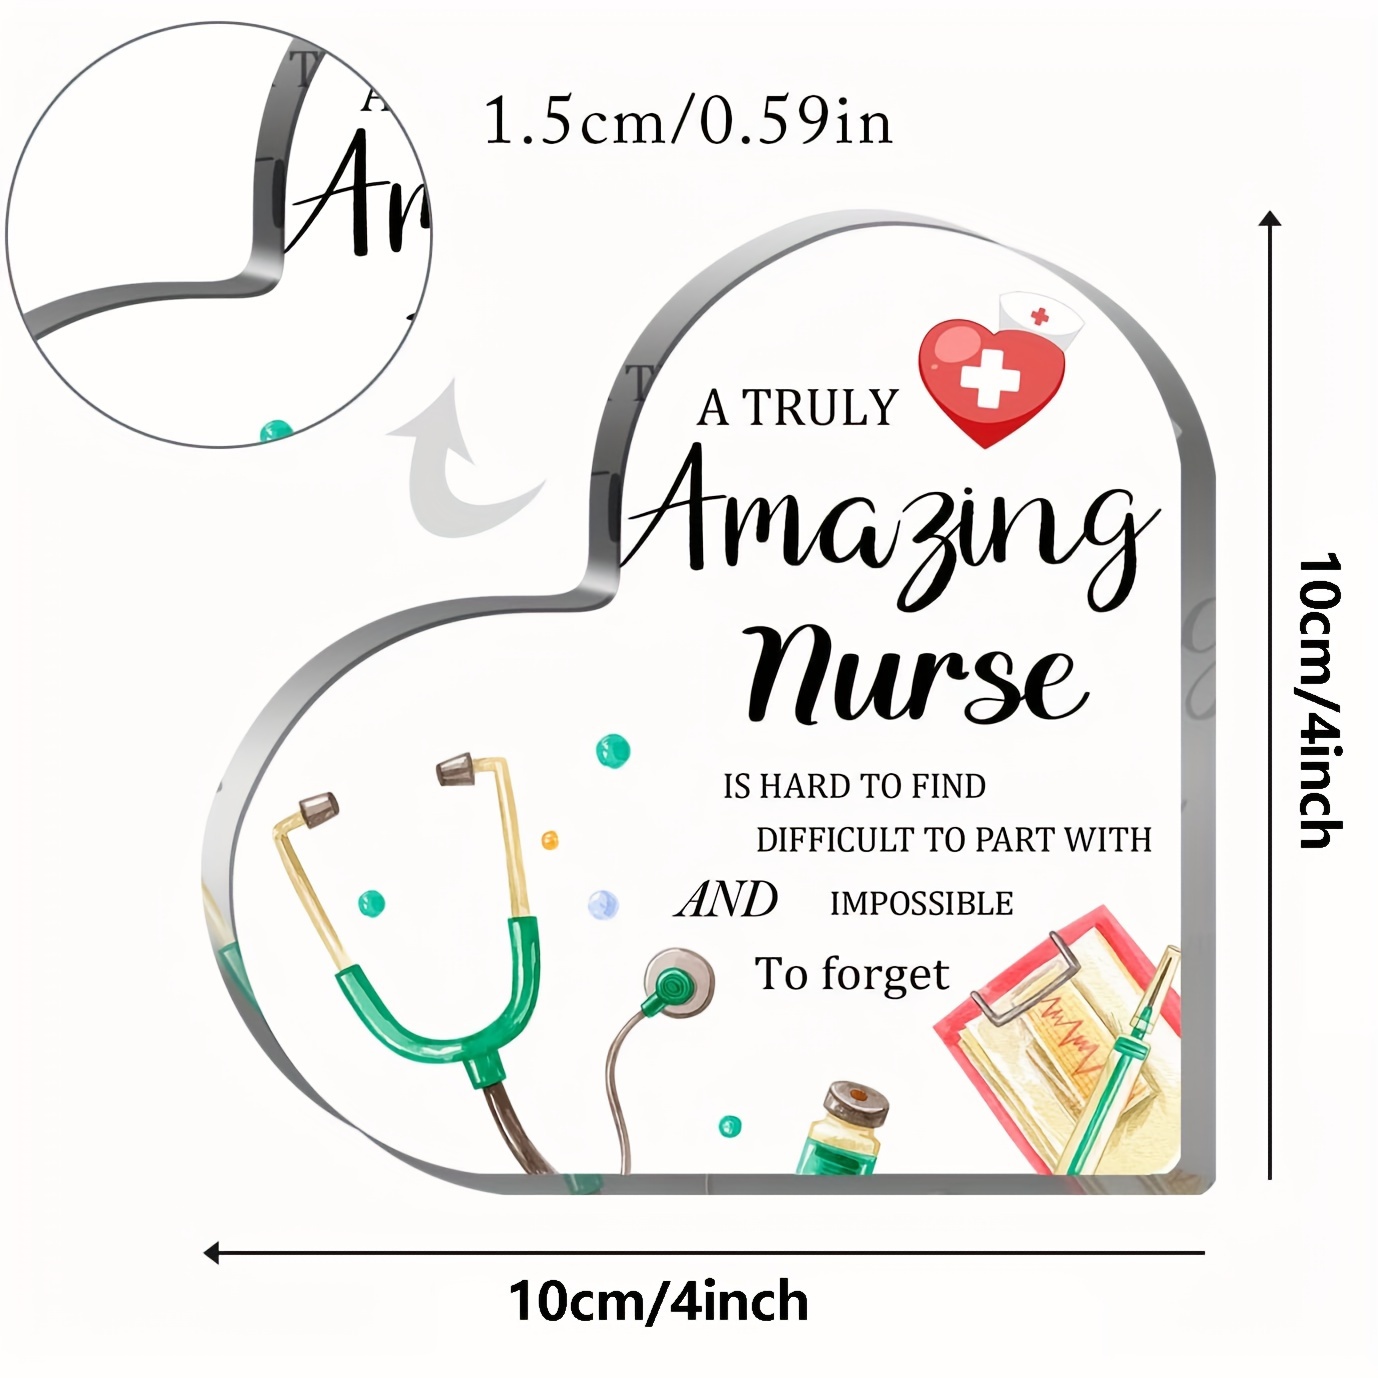 Regalos Enfermeras & Tens - Miren que lindo regalo para Enfermeras o Tens!  PEDIDOS AL WHATSAPP 979175457 👍 (galletas Dulce Delicia)